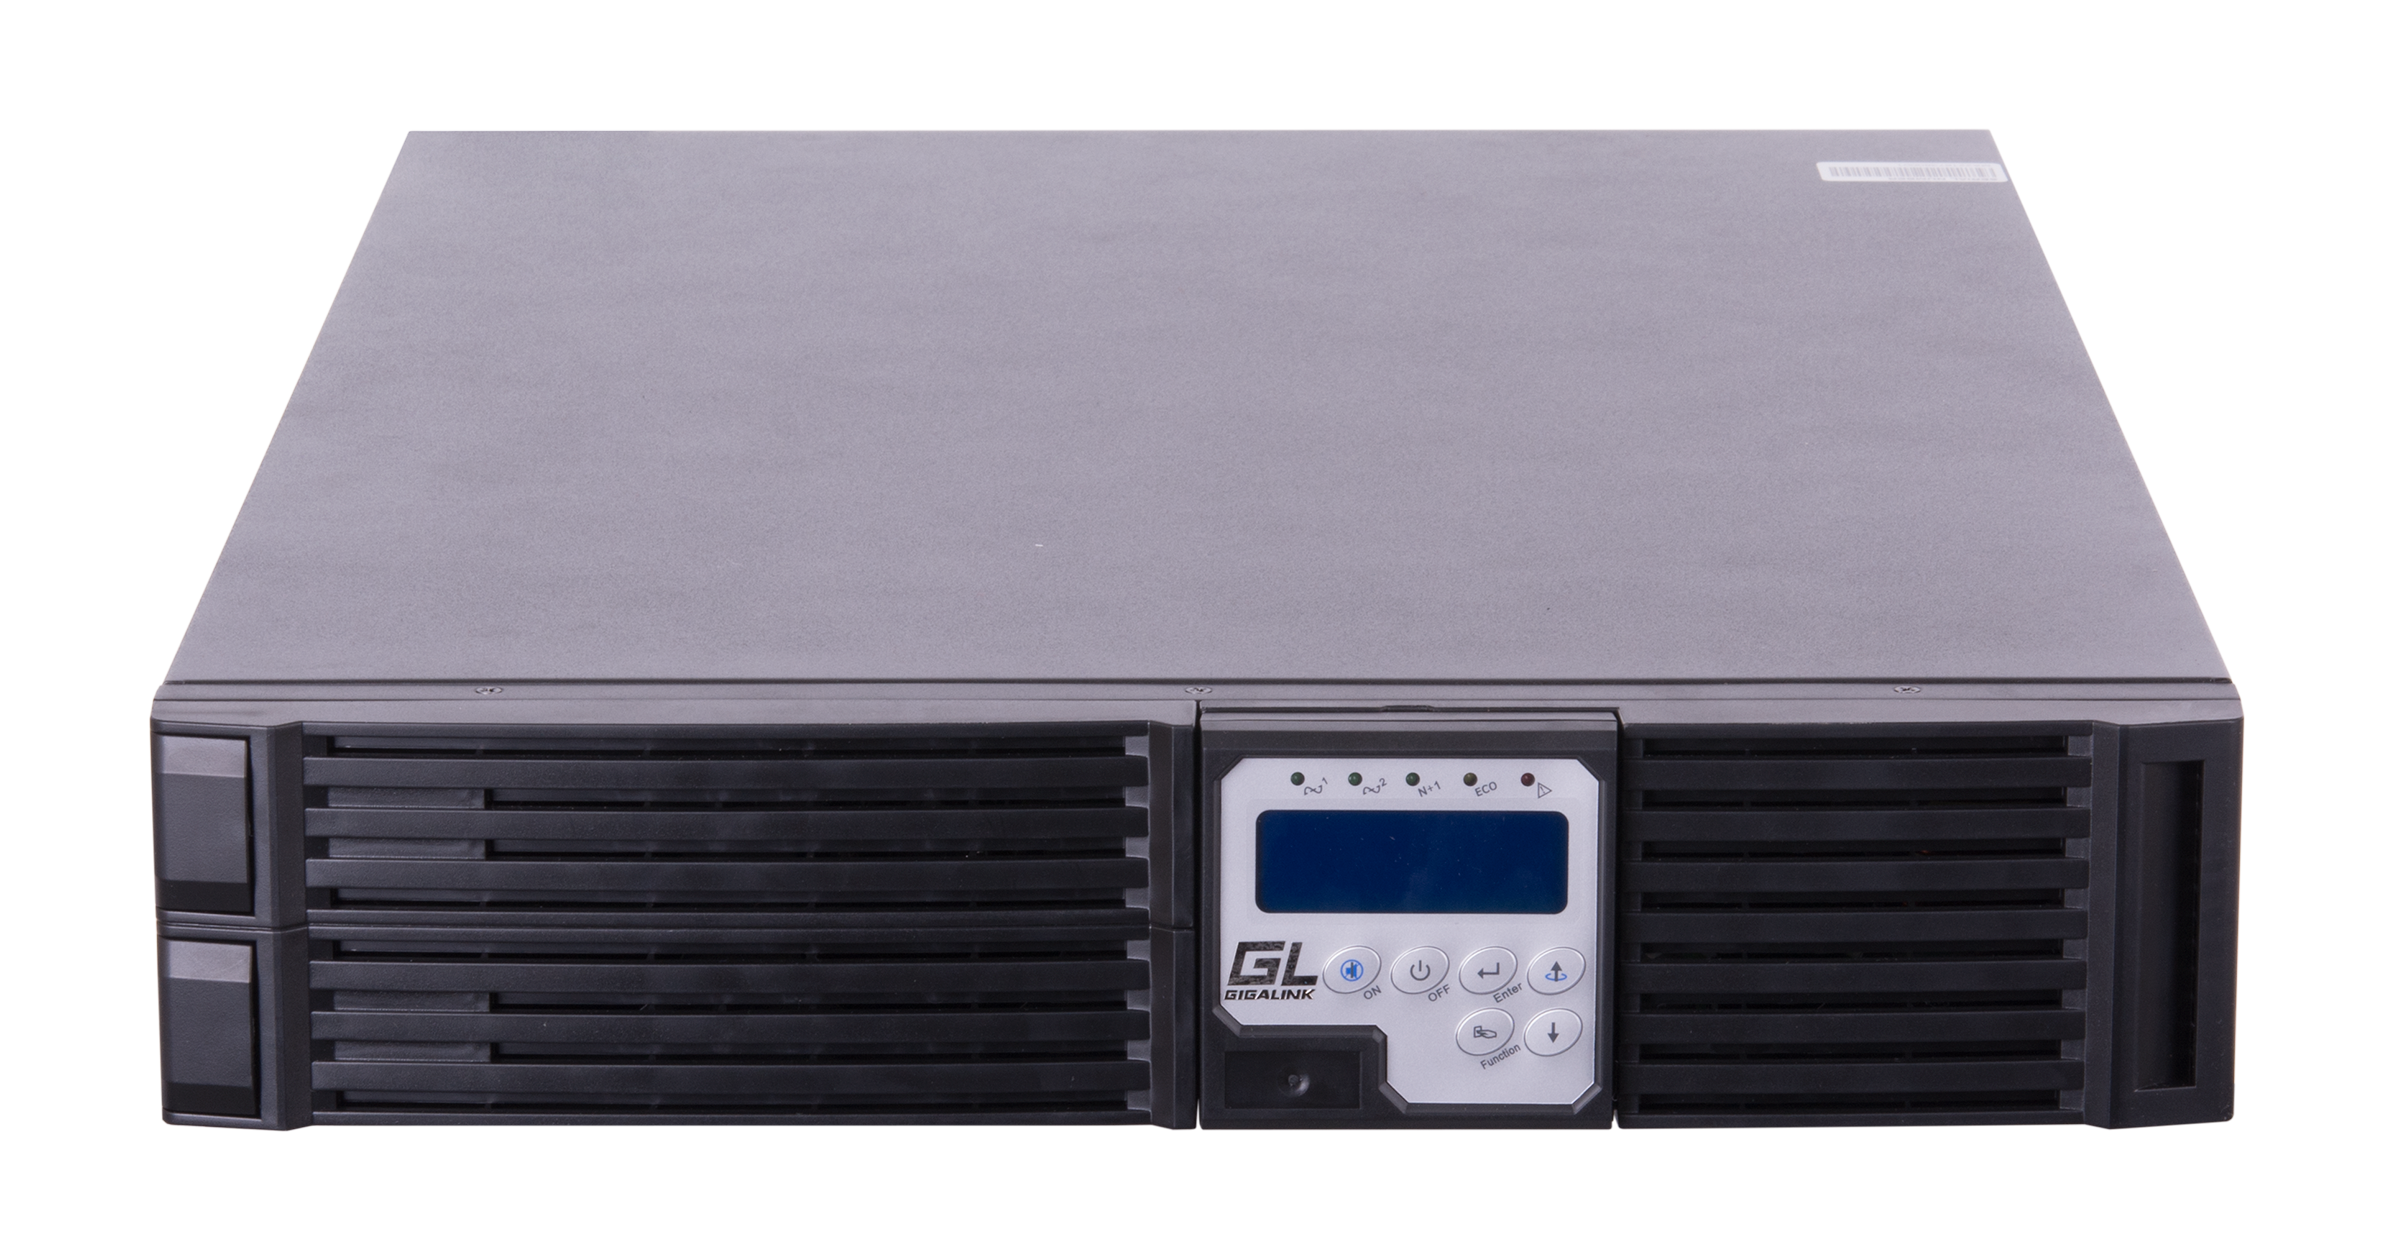 ИБП GIGALINK GL-UPS-OL06-1-1, 6000VA, 5400W, клеммная колодка, розеток - 1, USB, черный (без аккумуляторов)